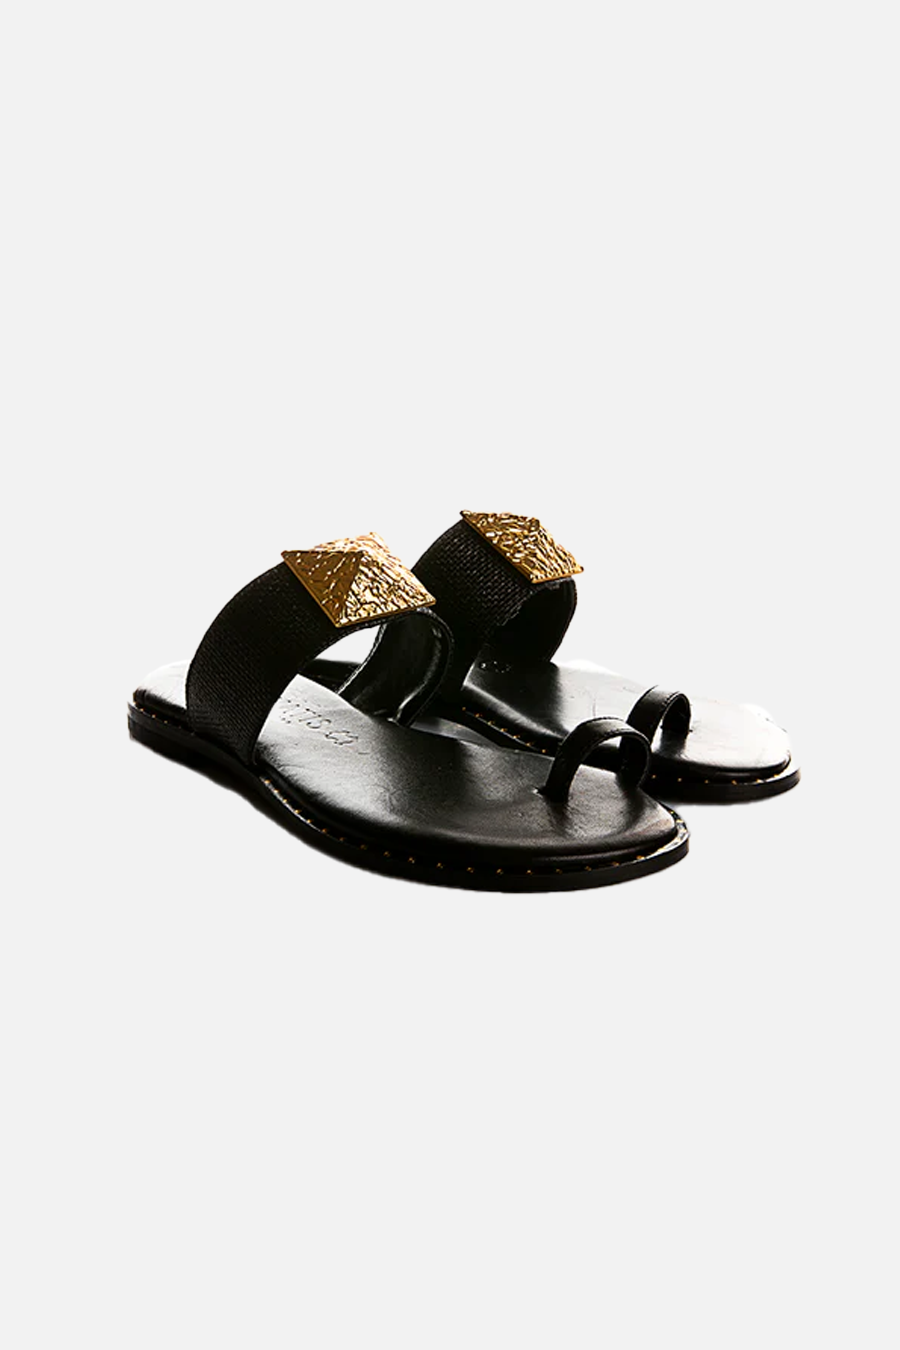 Greek Sandal in Black Gold